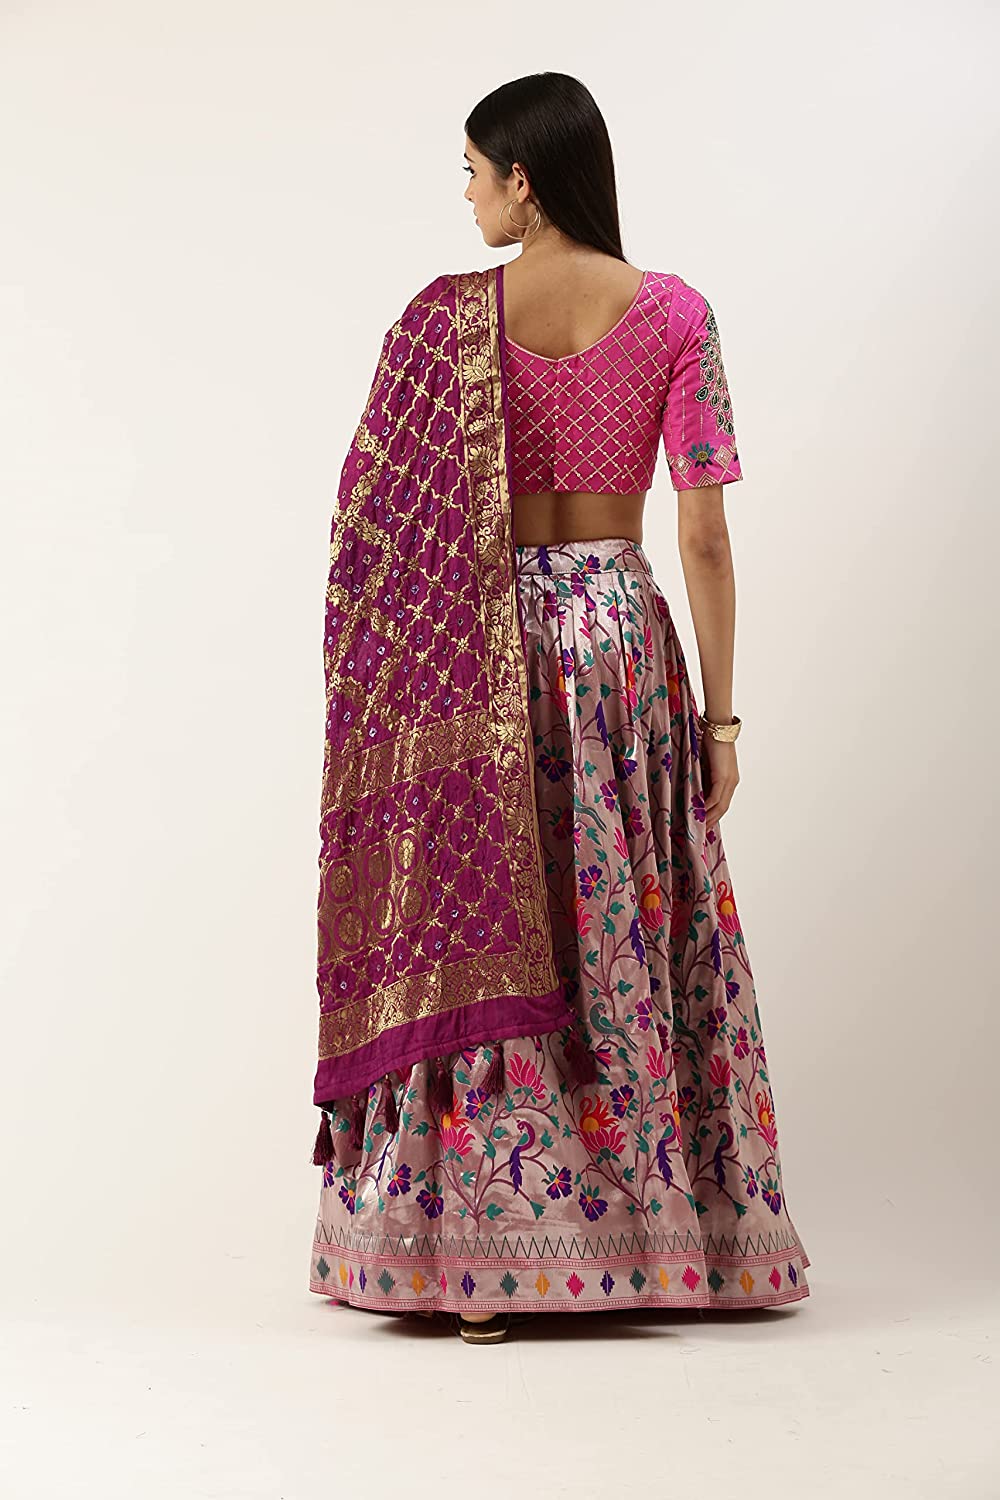 Art Women's wear Jacquard (Paithani) Silk Weaving Zari Work Lehenga choli with Unstitched Blouse And Dupatta